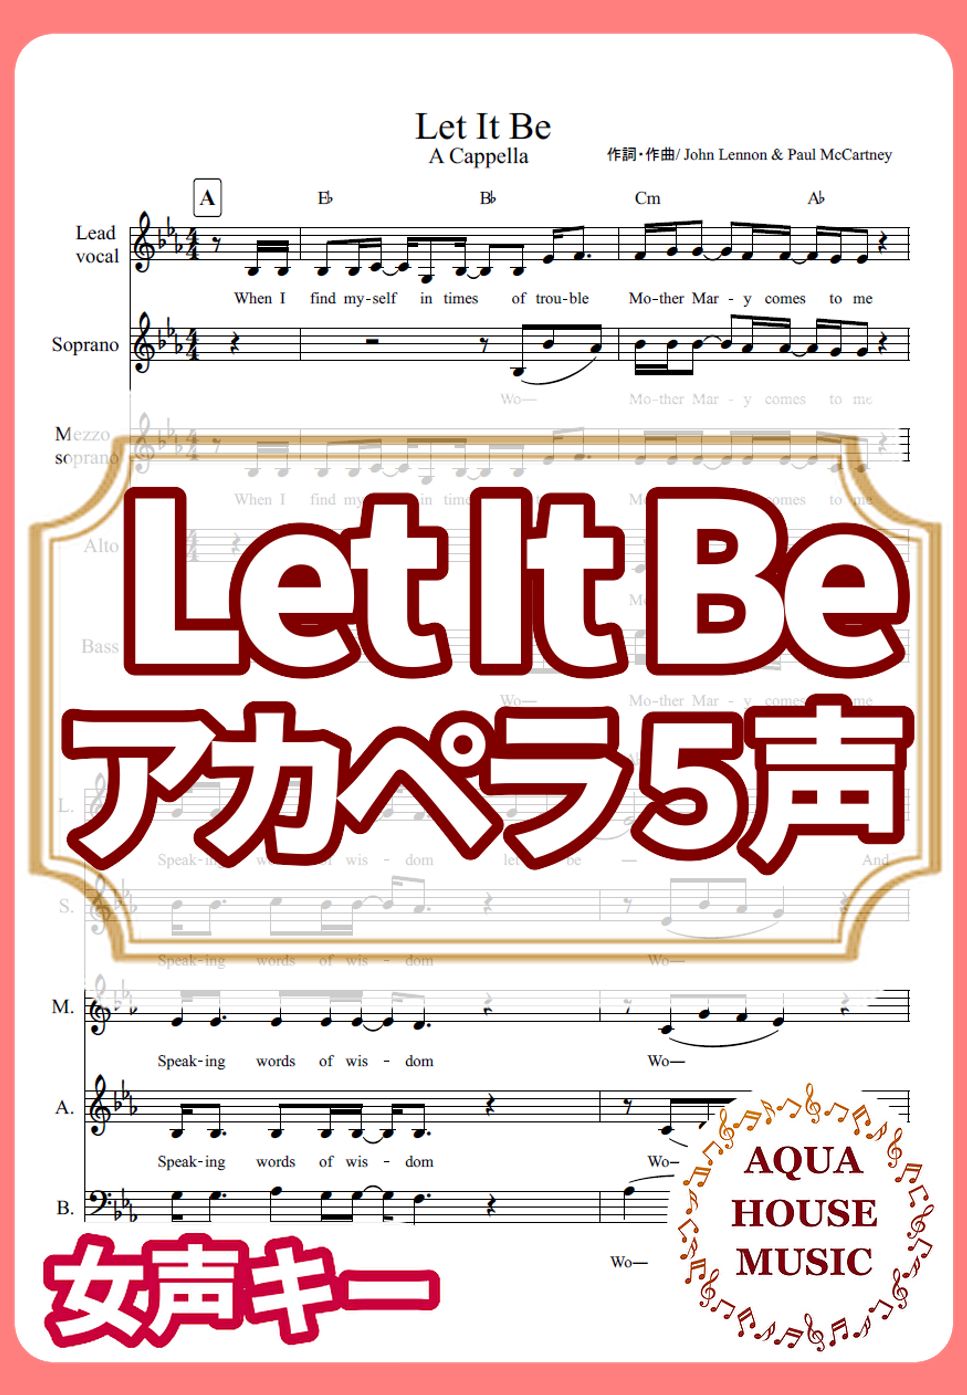 The Beatles - Let It Be (アカペラ楽譜♪５声ボイパなし) by 飯田 亜紗子